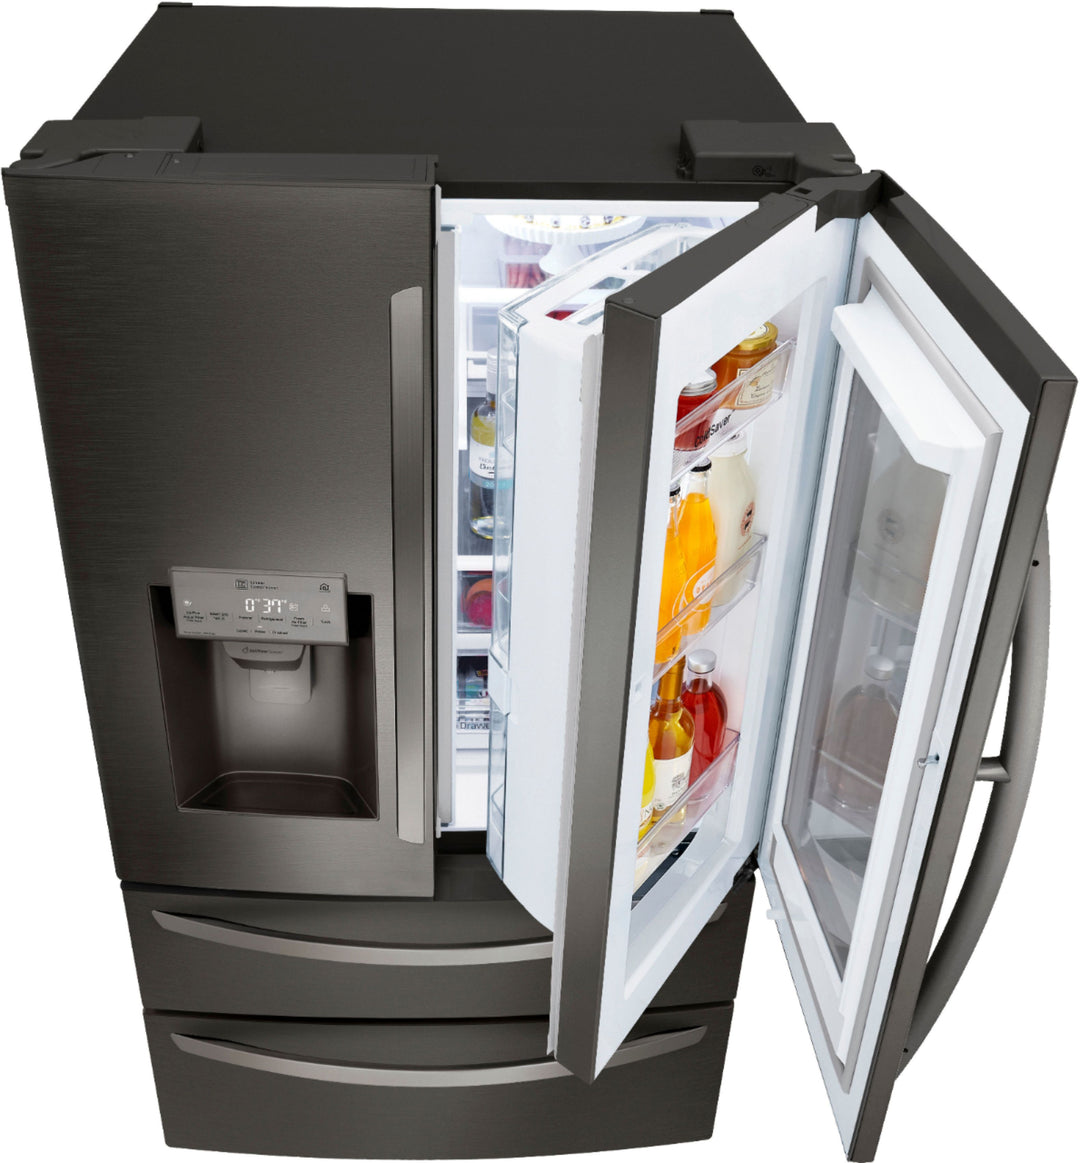 LG - 27.8 Cu. Ft. 4-Door French Door Smart Refrigerator with InstaView - Black stainless steel_3